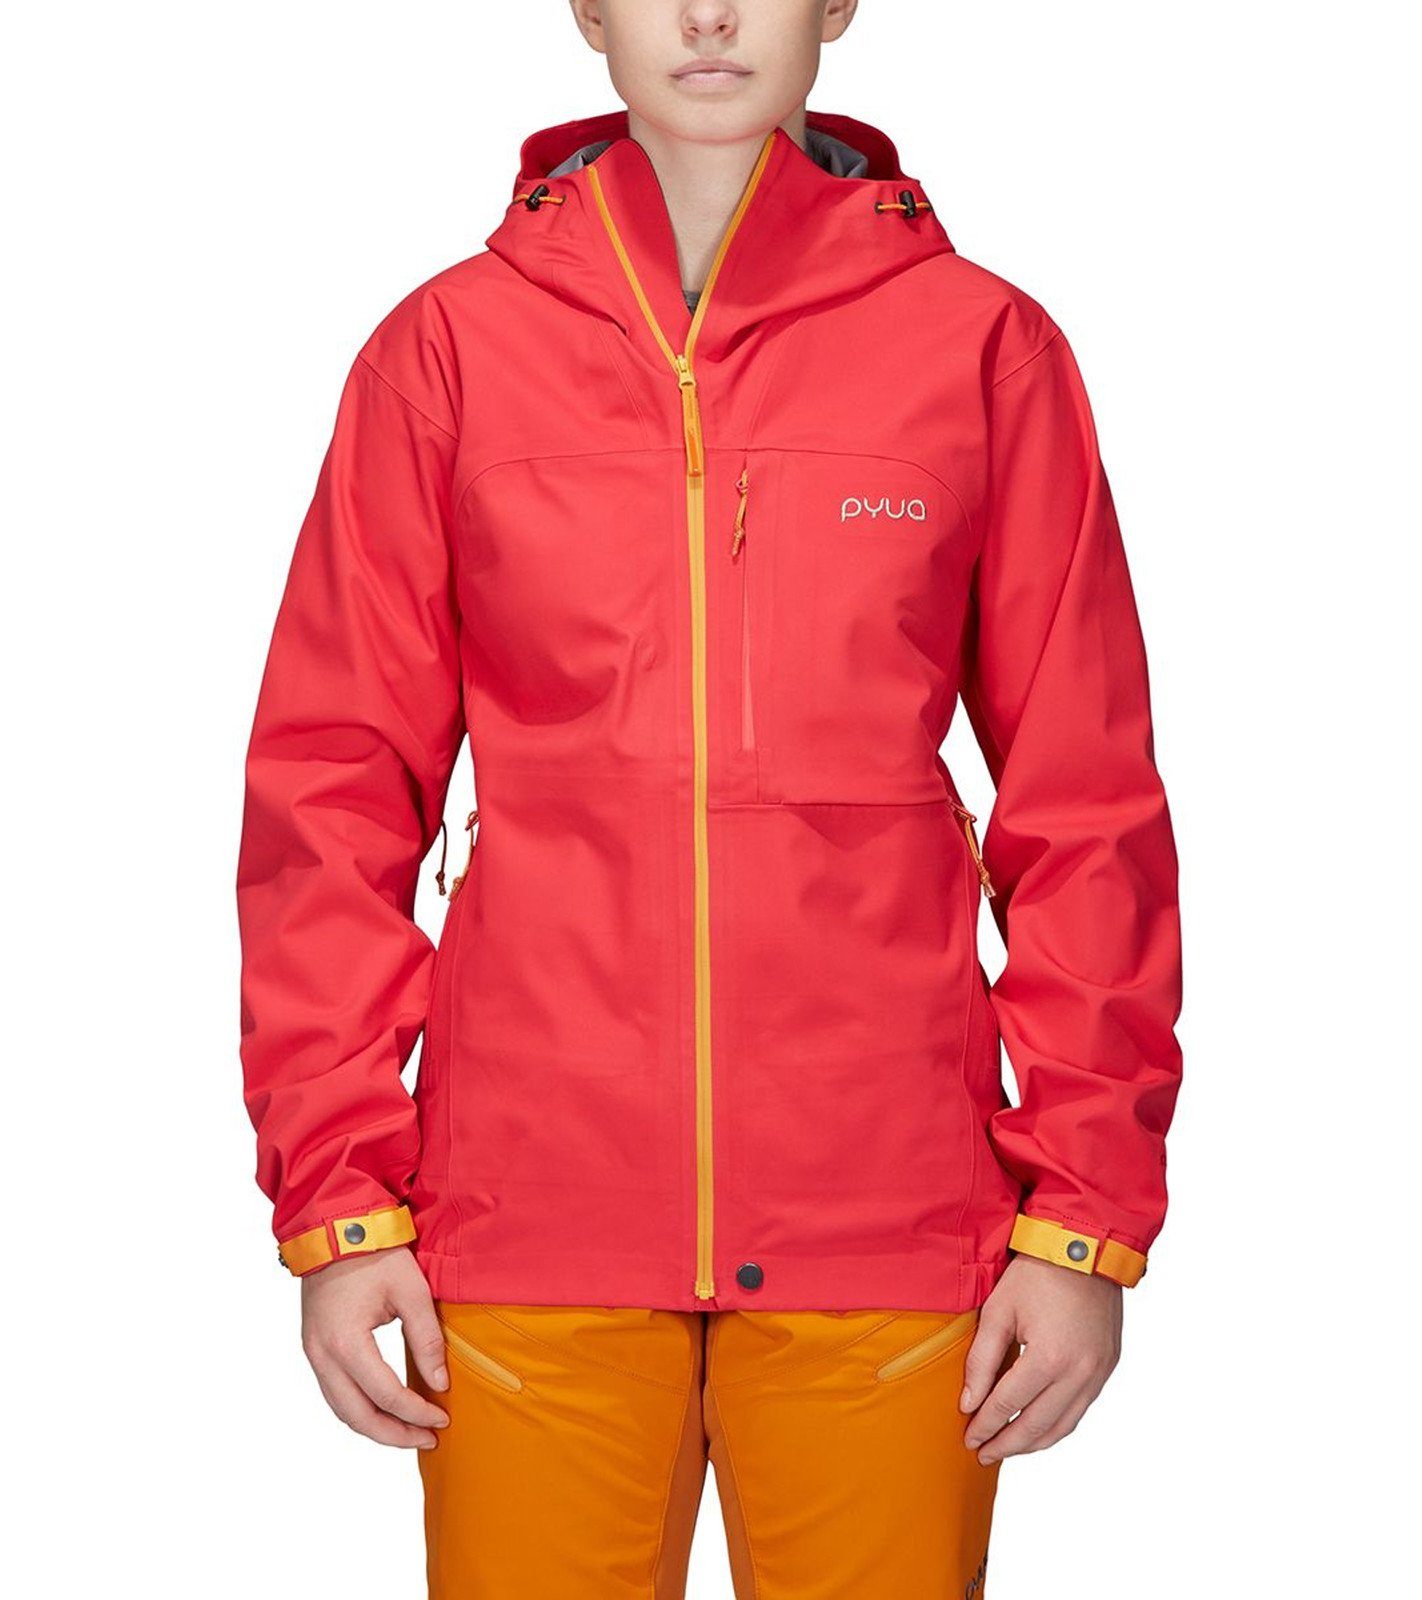 PYUA Winterjacke »PYUA Ski-Jacke wasserdichte Damen Hardshell Regen-Jacke  Gorge Winter-Jacke Pink« online kaufen | OTTO